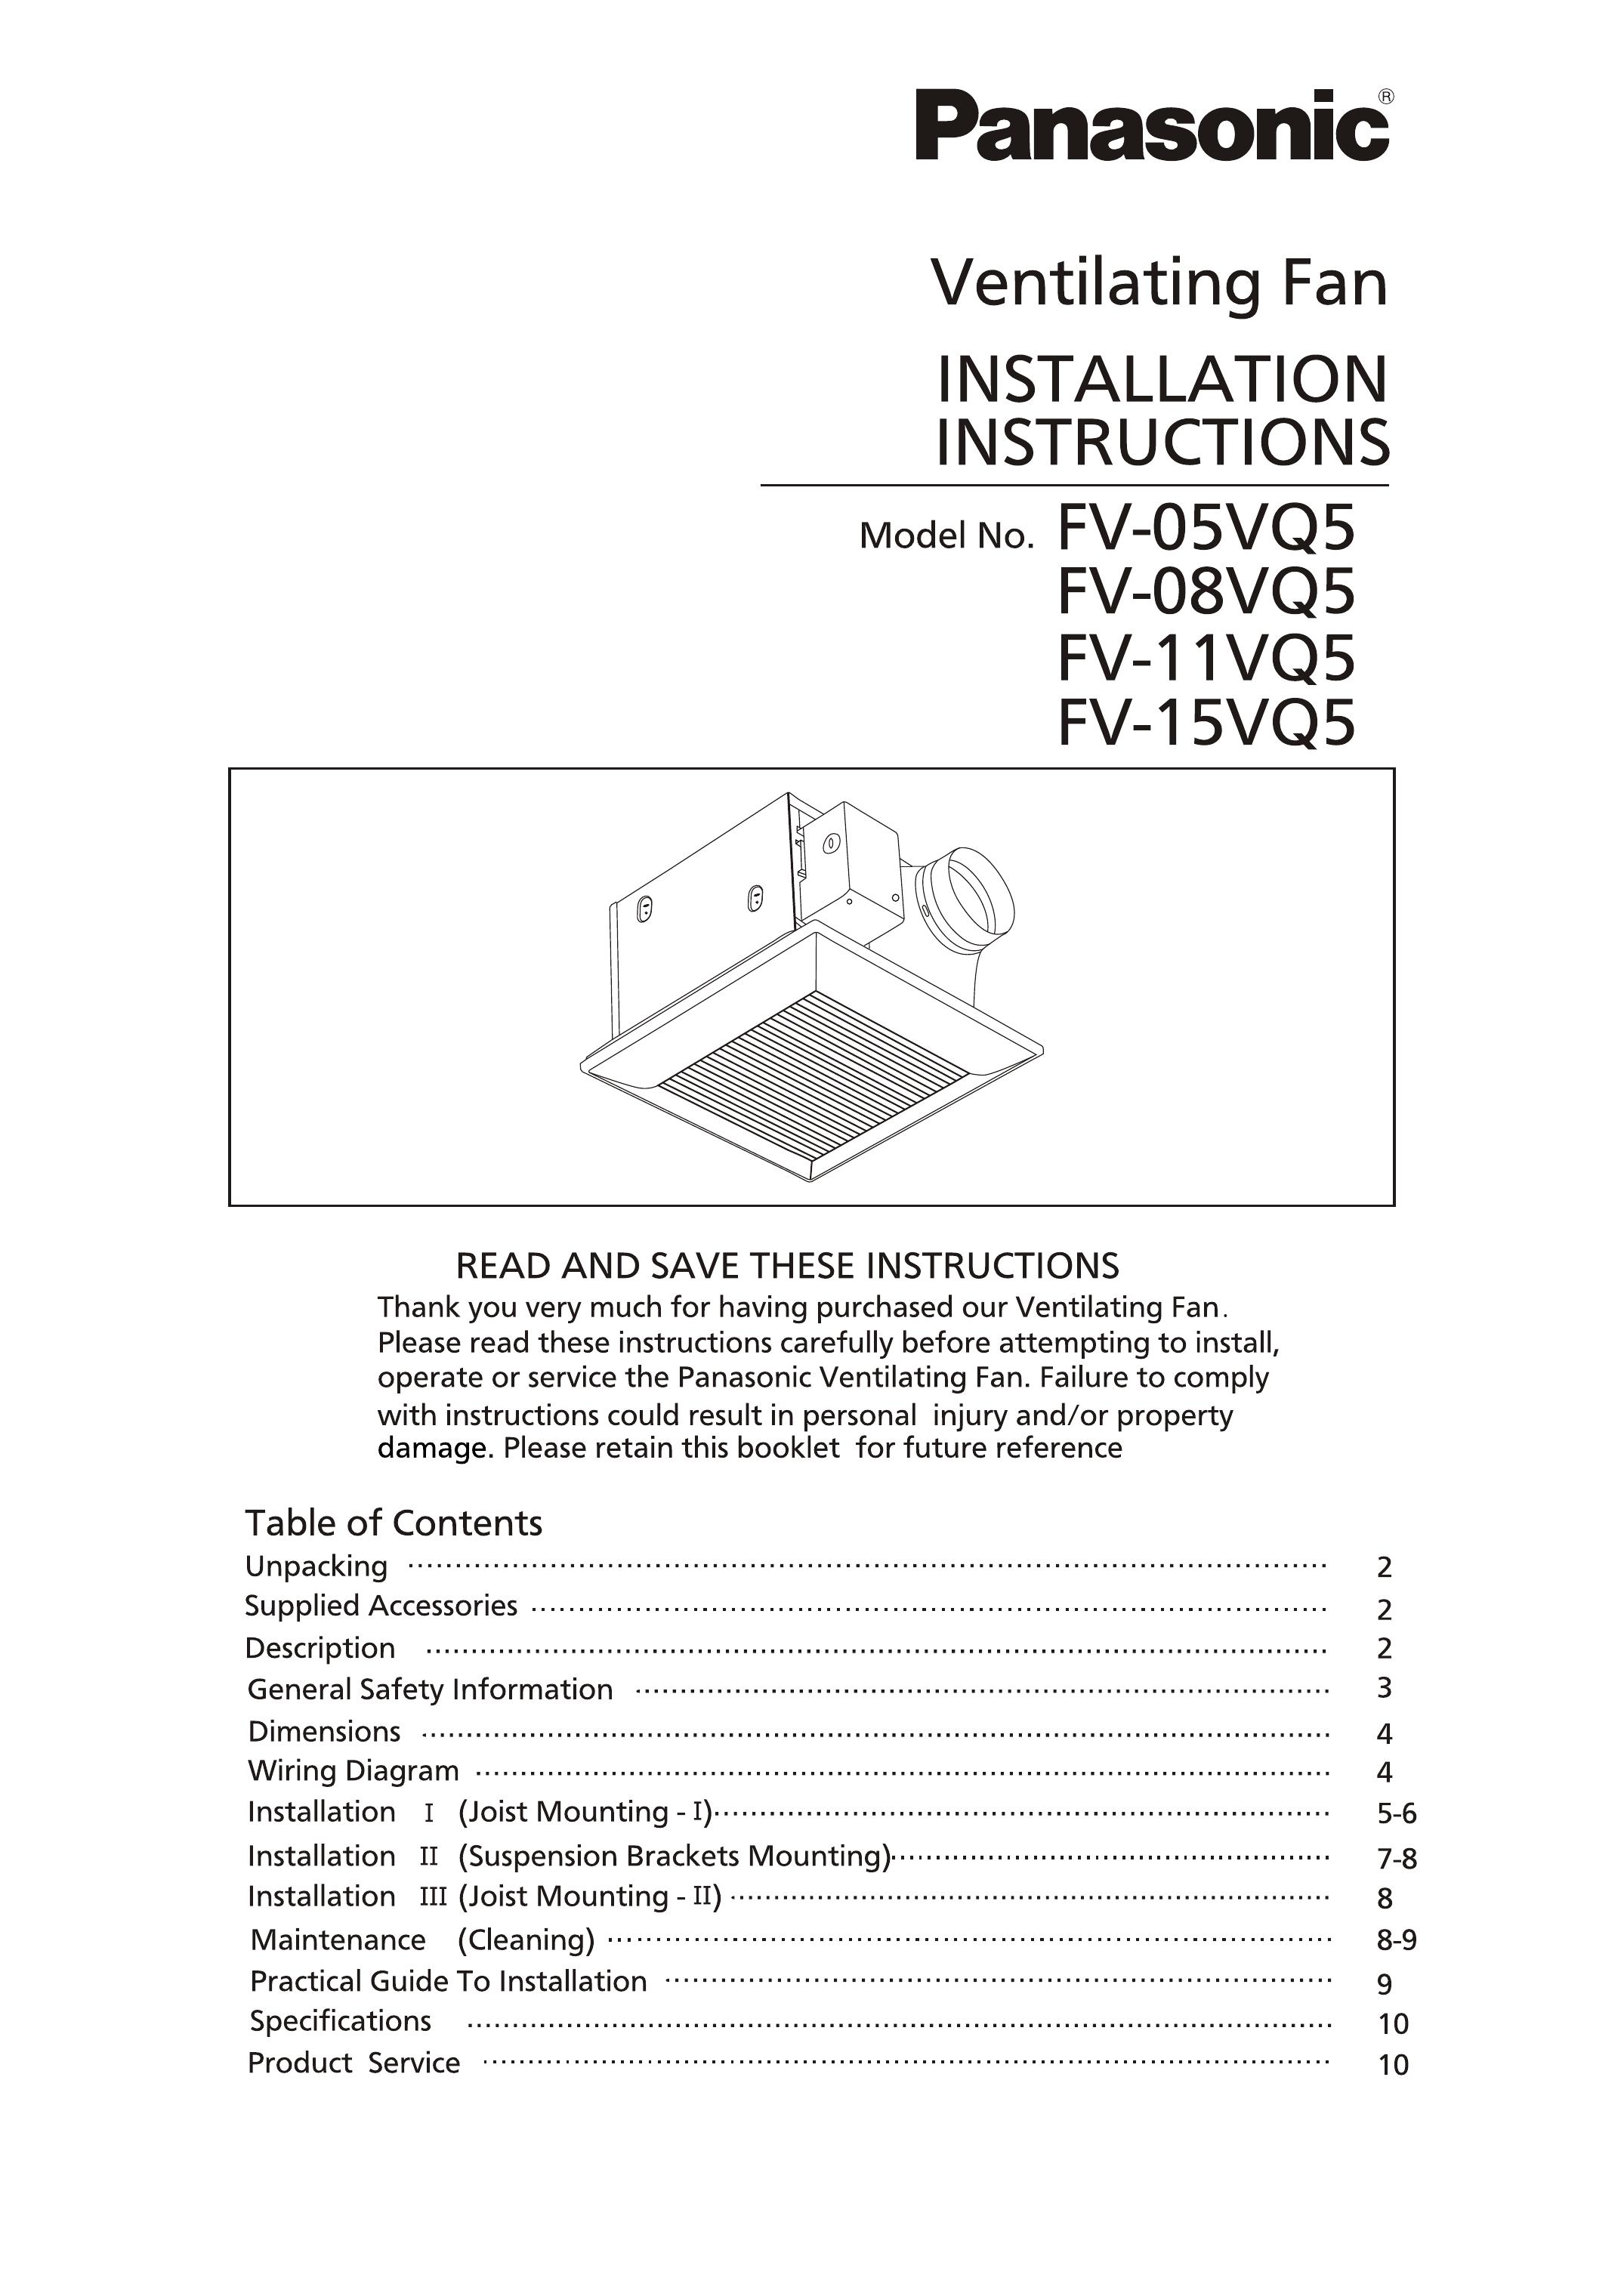 Panasonic FV-15VQ5 Ventilation Hood User Manual